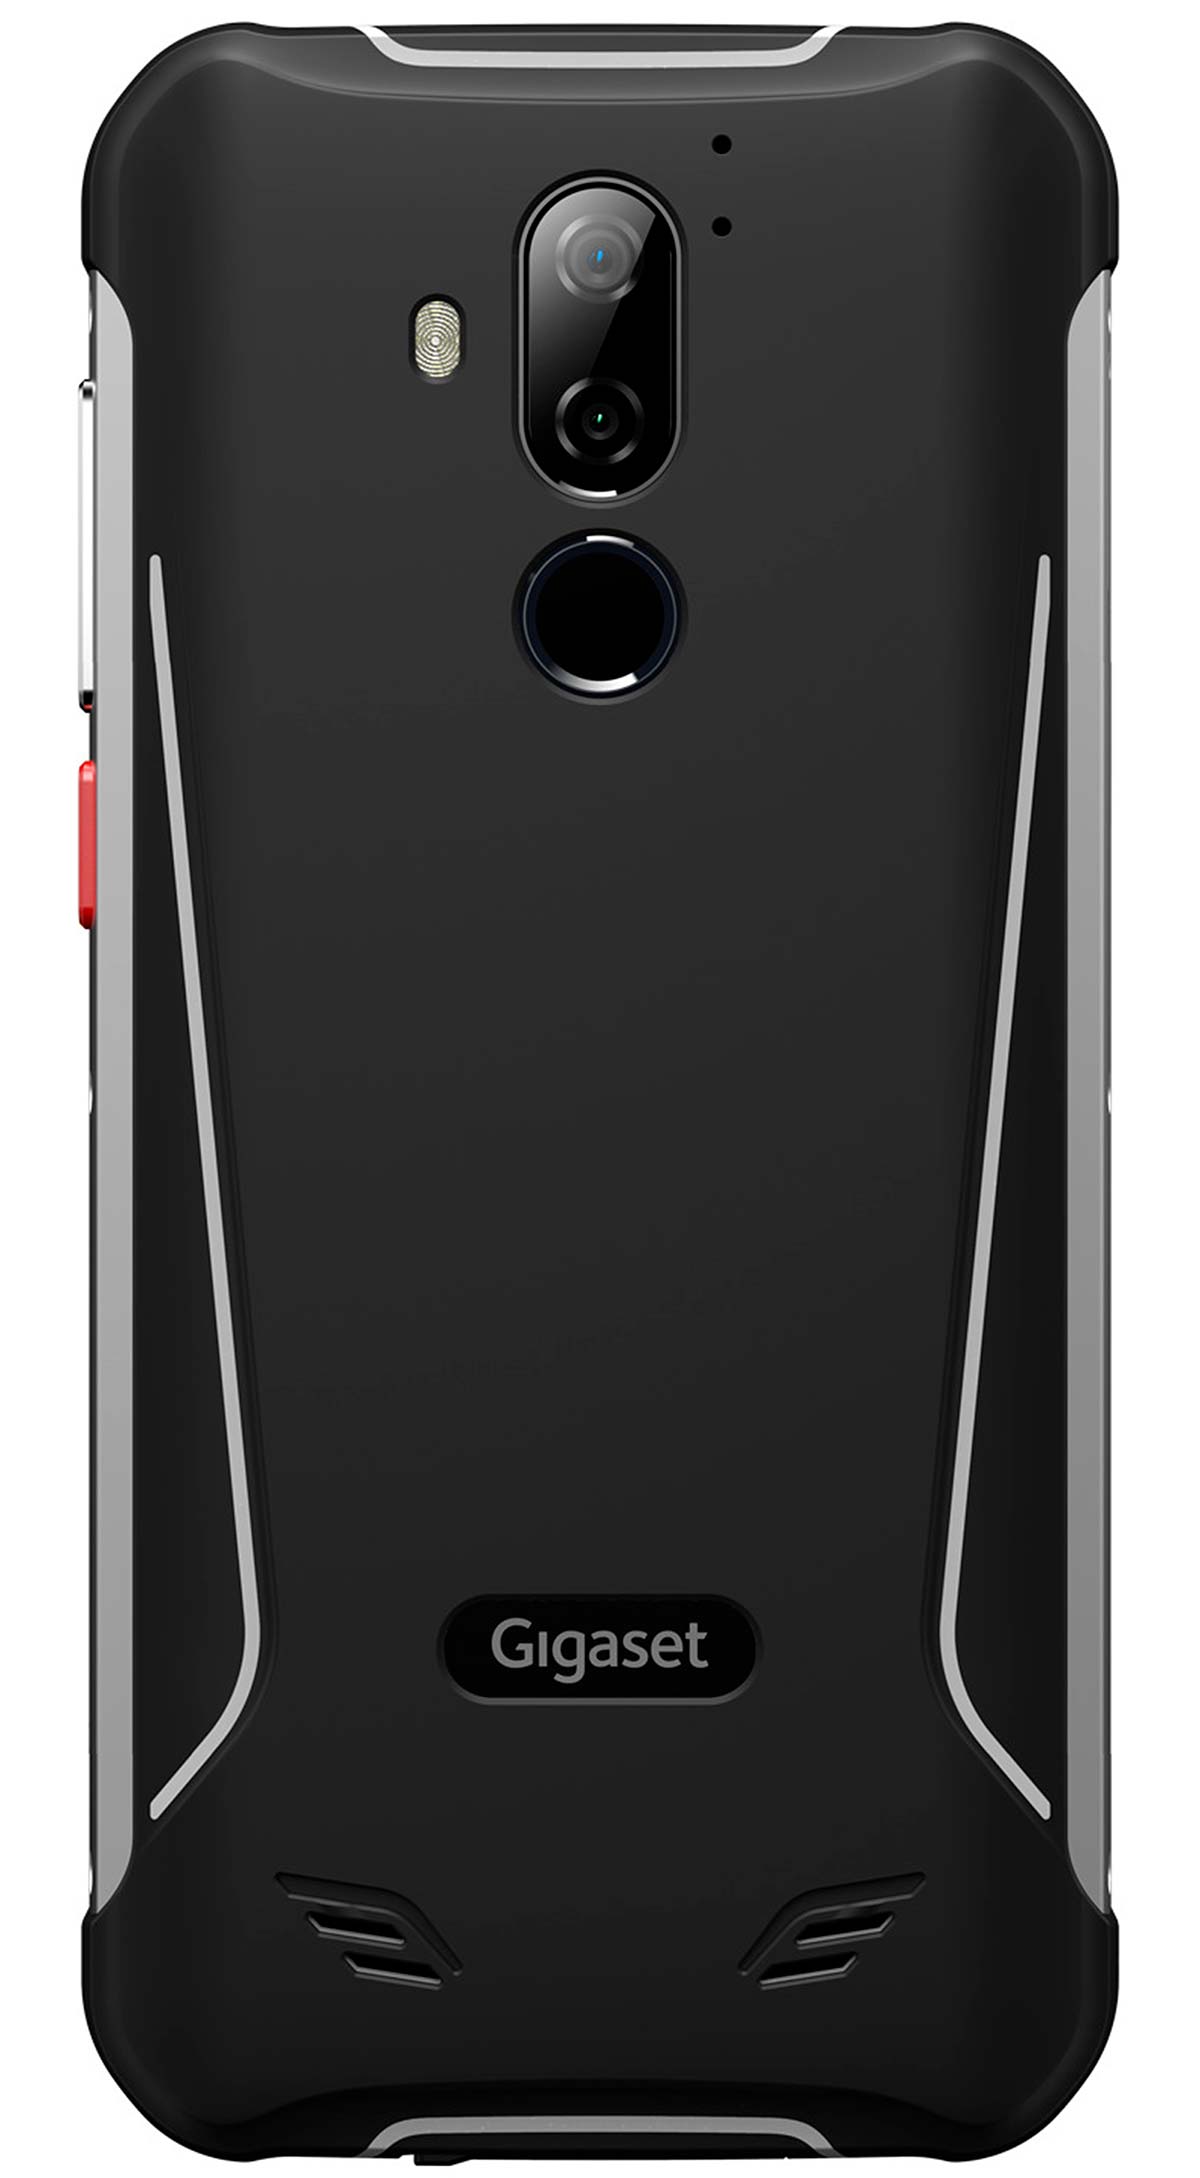 En TodoMountainBike: Gigaset GX290 Plus, un smartphone todoterreno perfecto para los deportistas y aventureros